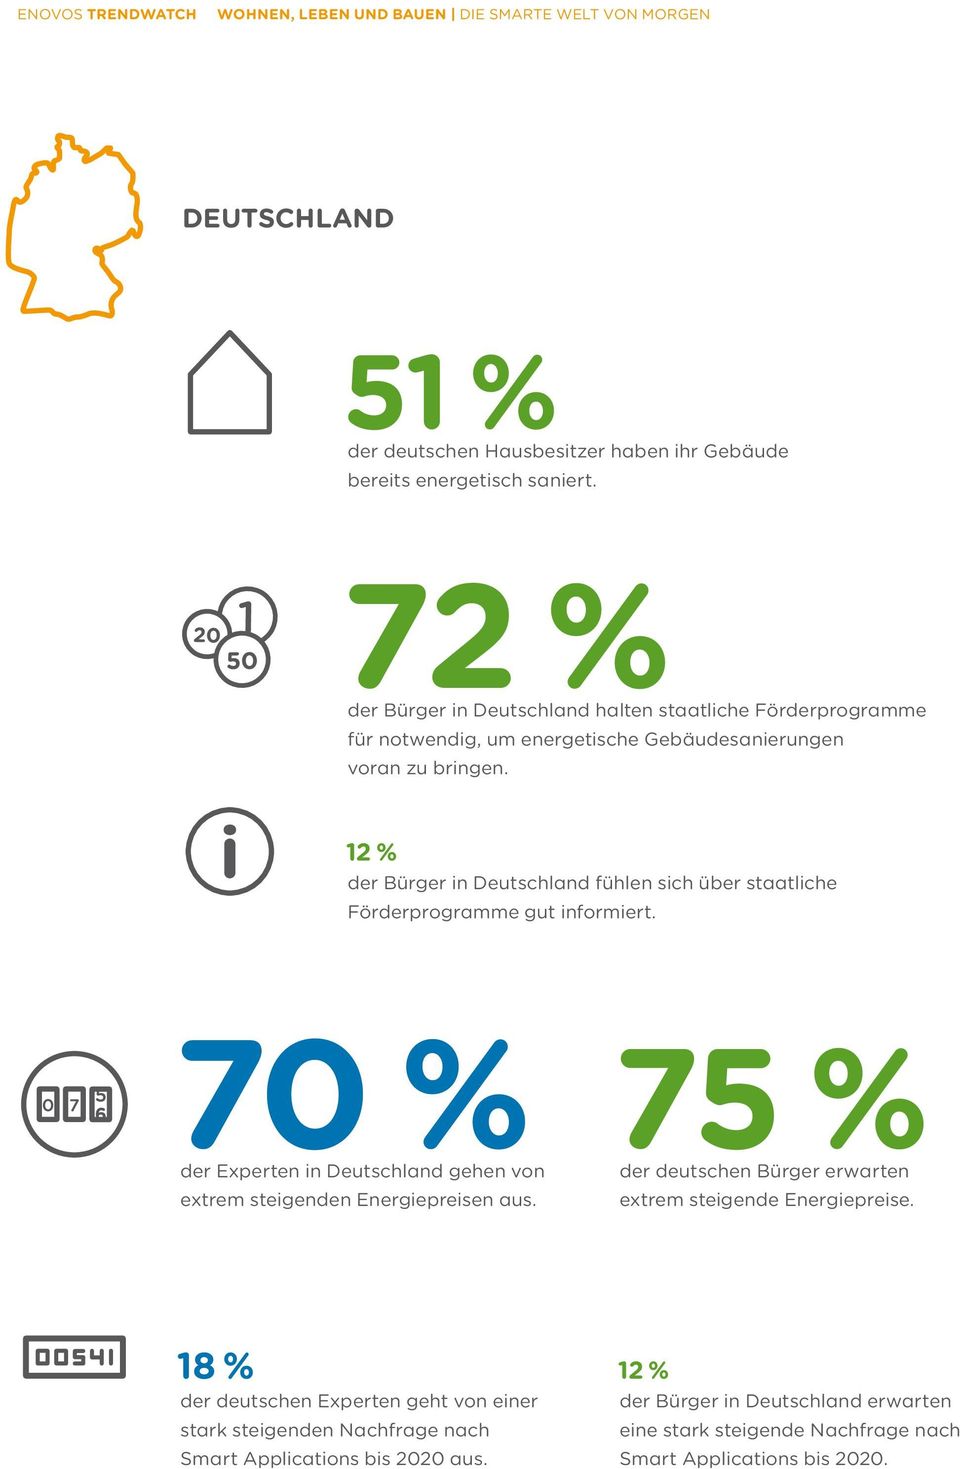 12 % der Bürger in Deutschland fühlen sich über staatliche Förderprogramme gut informiert.